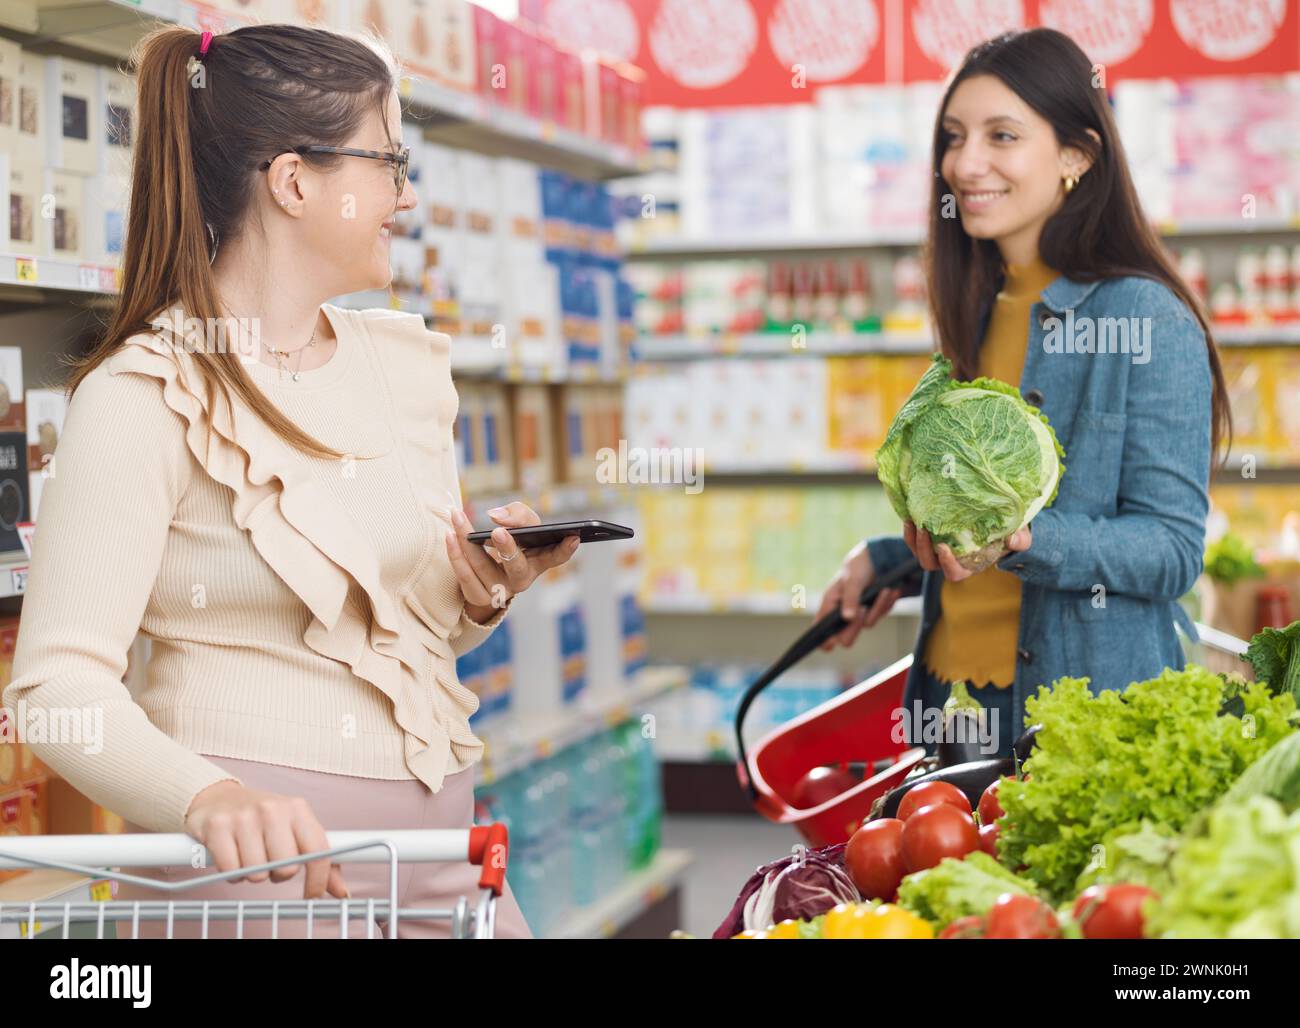 Glückliche Frauen treffen sich im Supermarkt, sie reden und kaufen zusammen frisches gesundes Gemüse, Lebensmittelgeschäft und Lifestyle Konzept Stockfoto